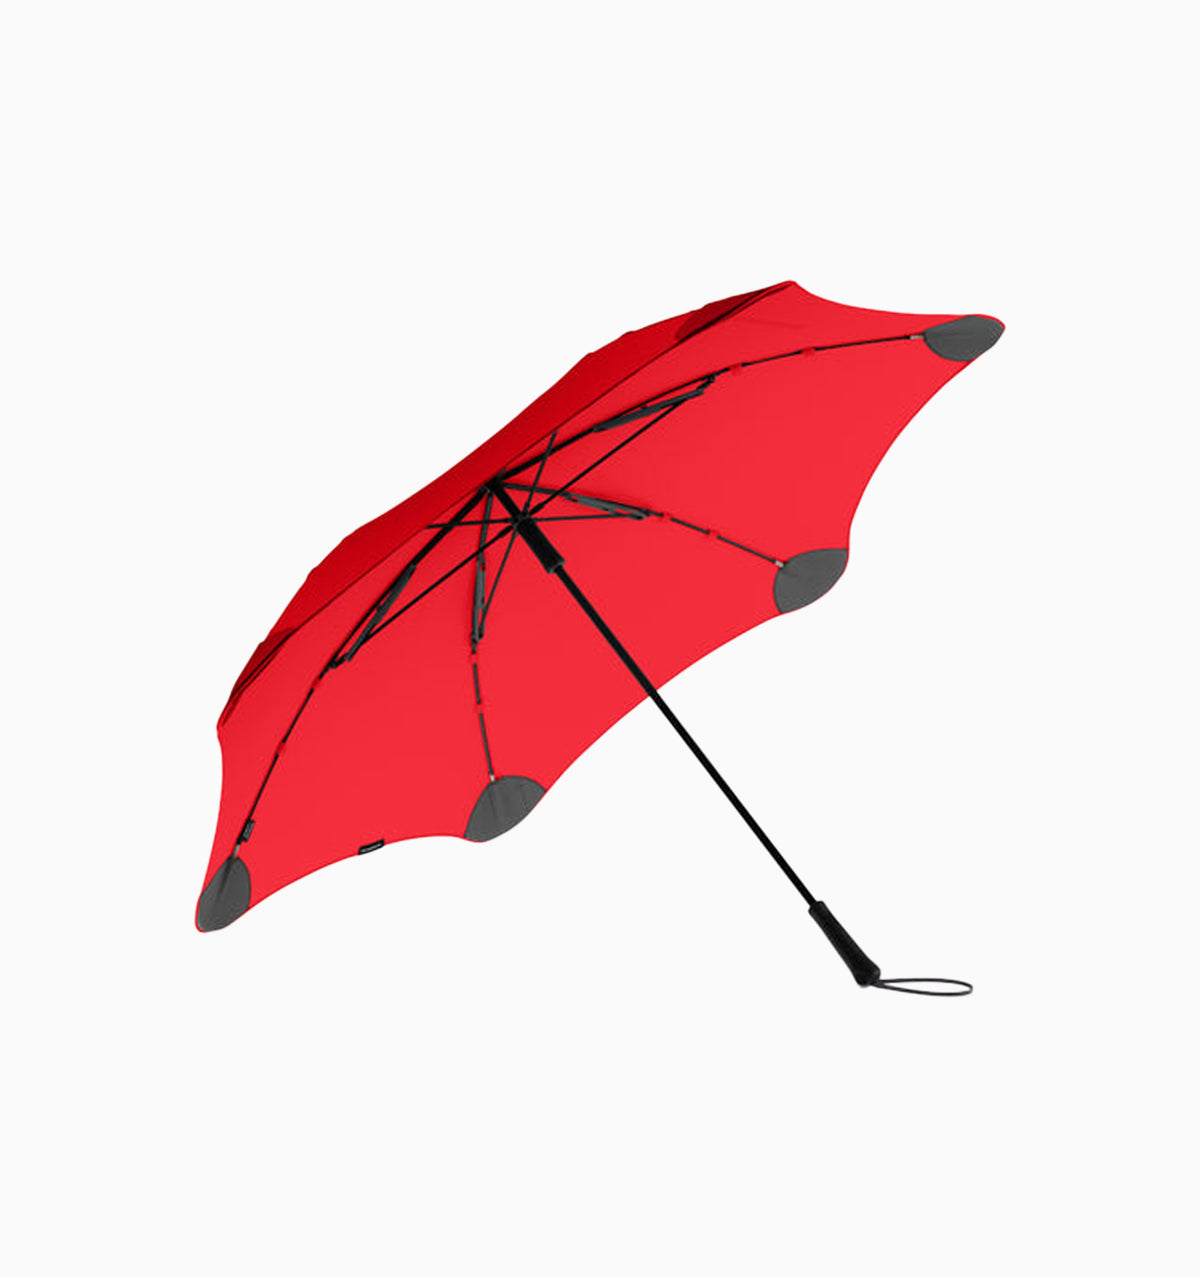 Blunt Exec Umbrella - Red